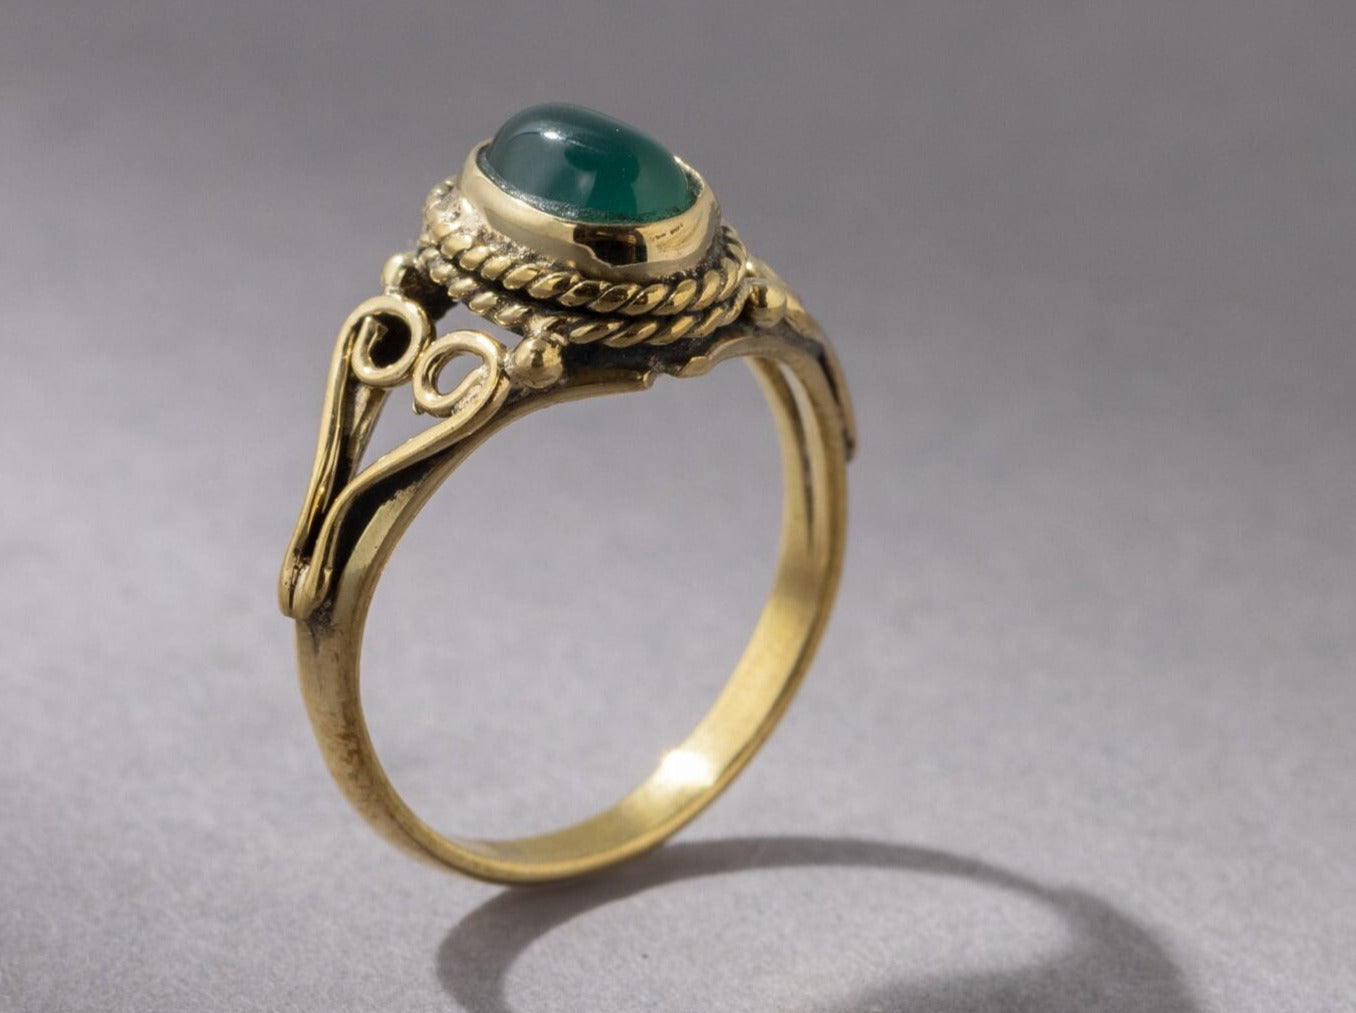 Grüner Onyx Ring mit ovalem Stein verspielt gold handgemacht